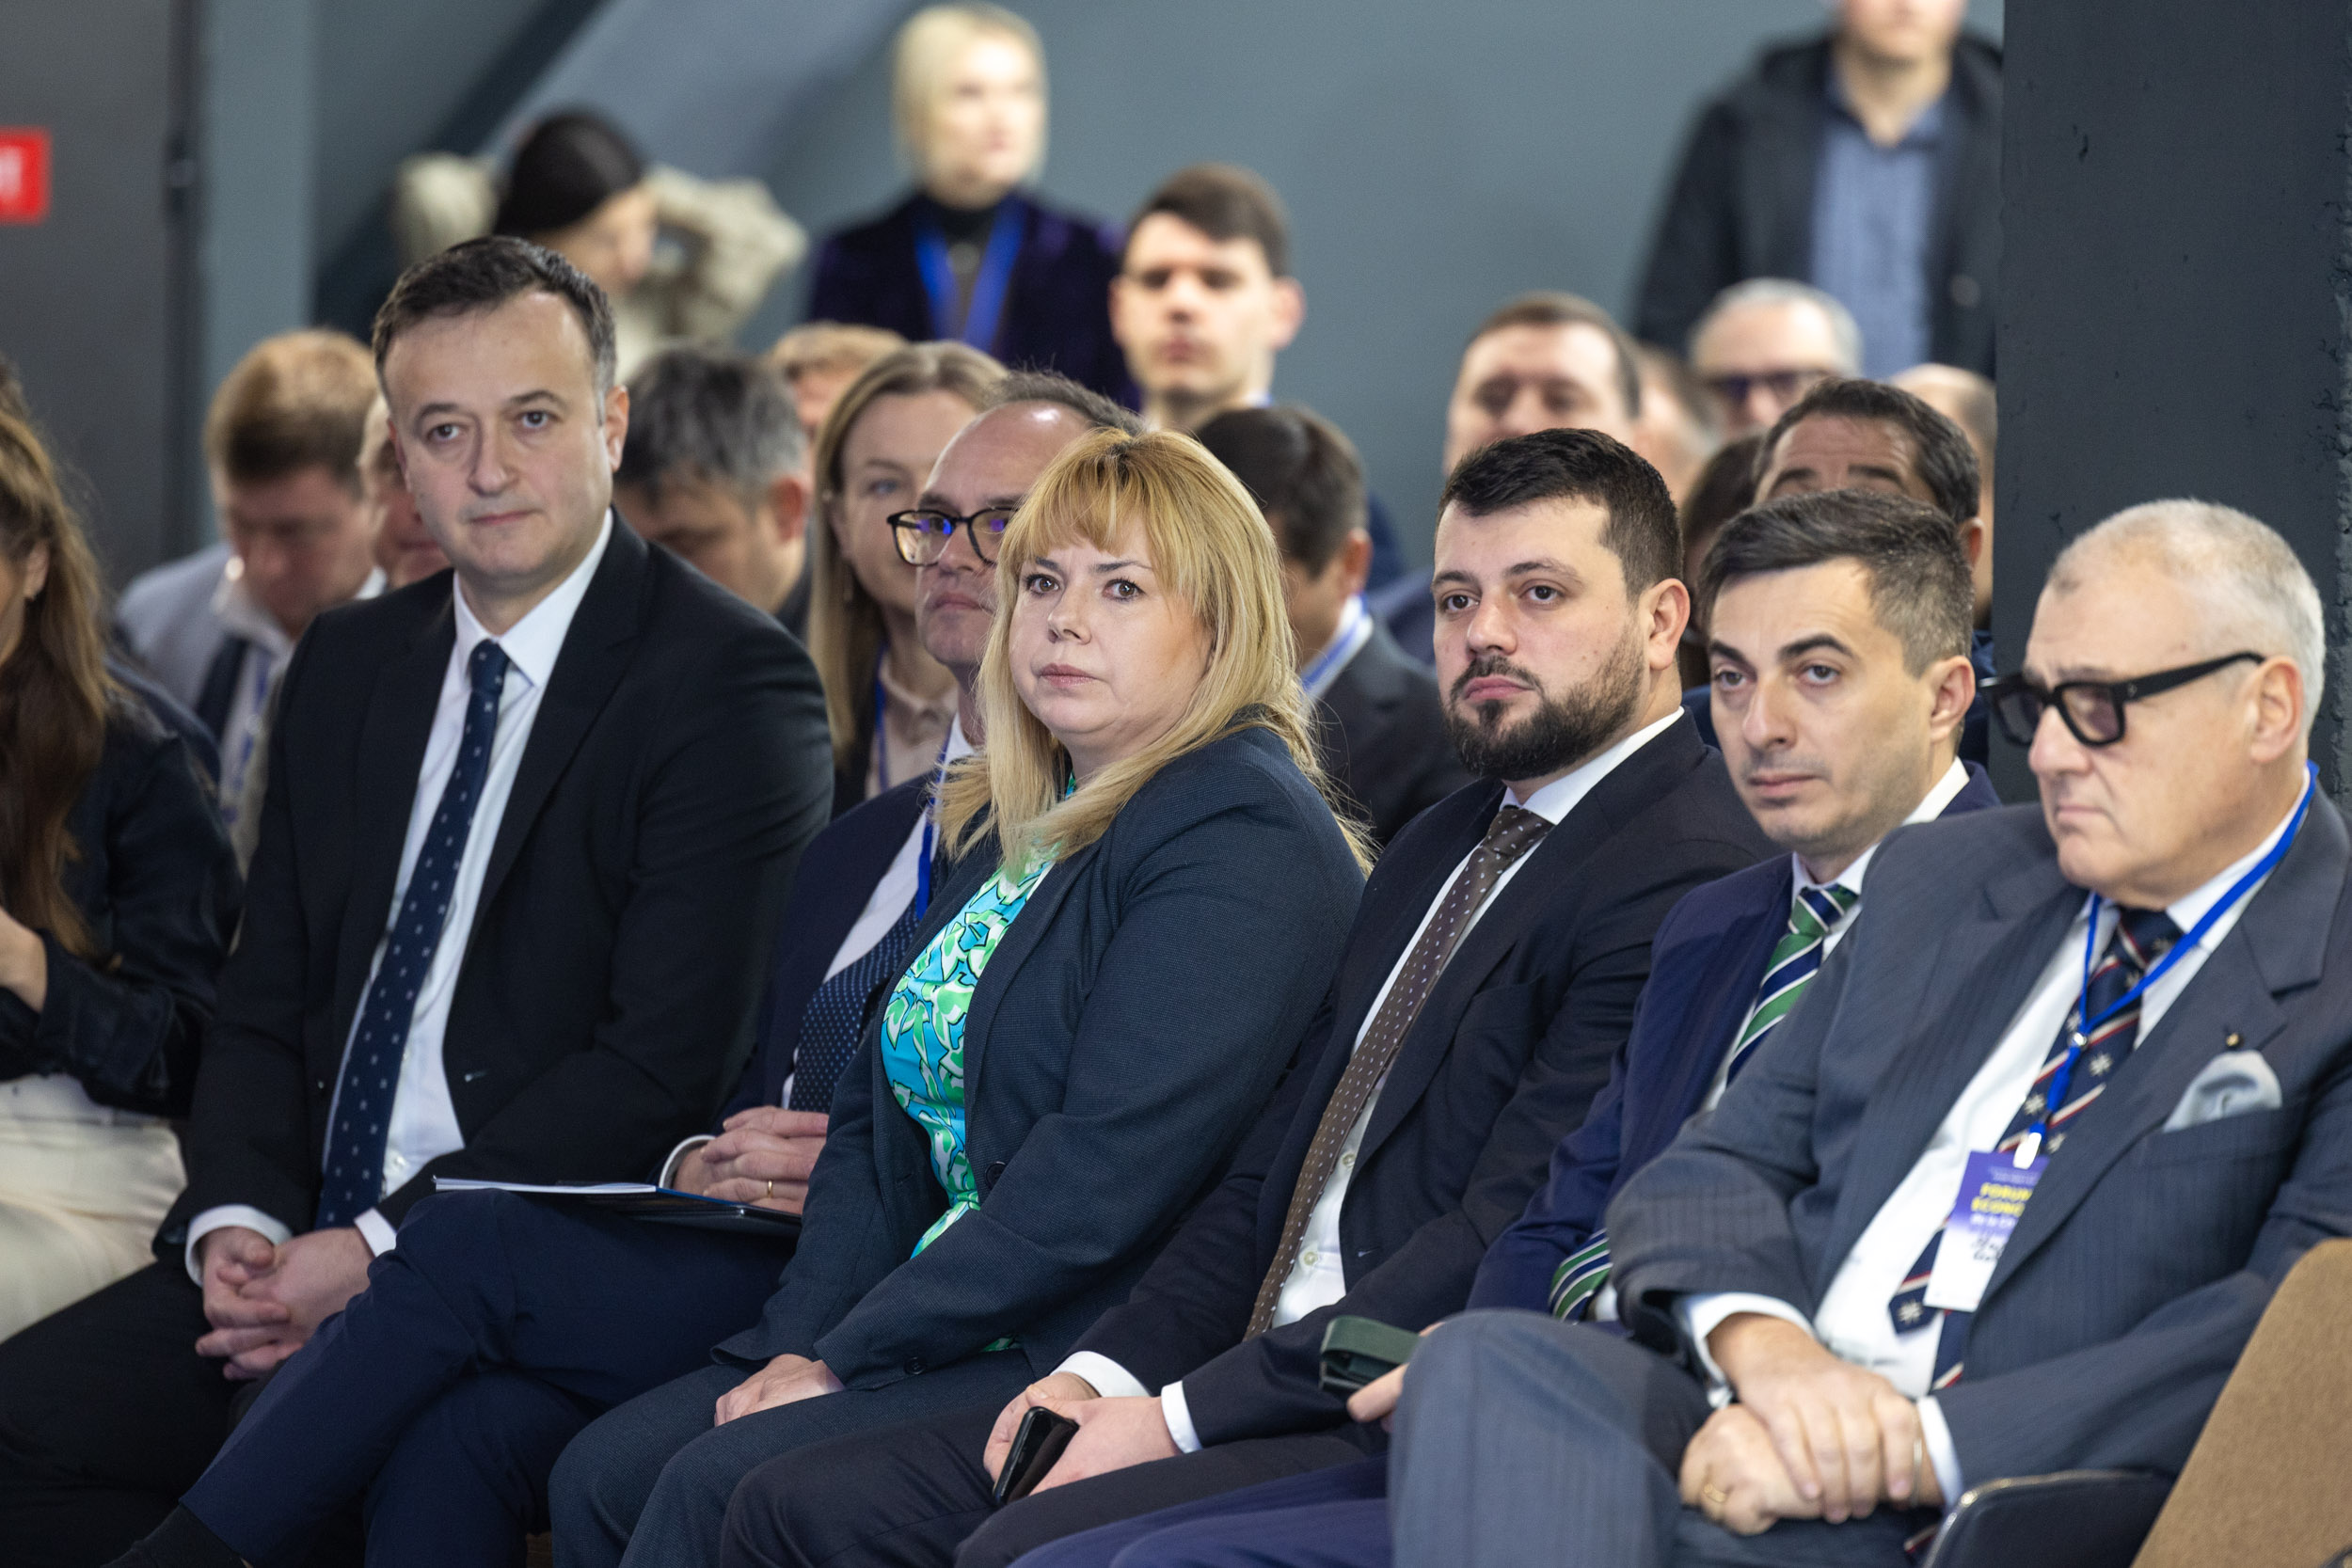 FOTO Recean, la Forumul Economic, către cele 300 de companii participante: Moldova are talent și capacitate de a inova